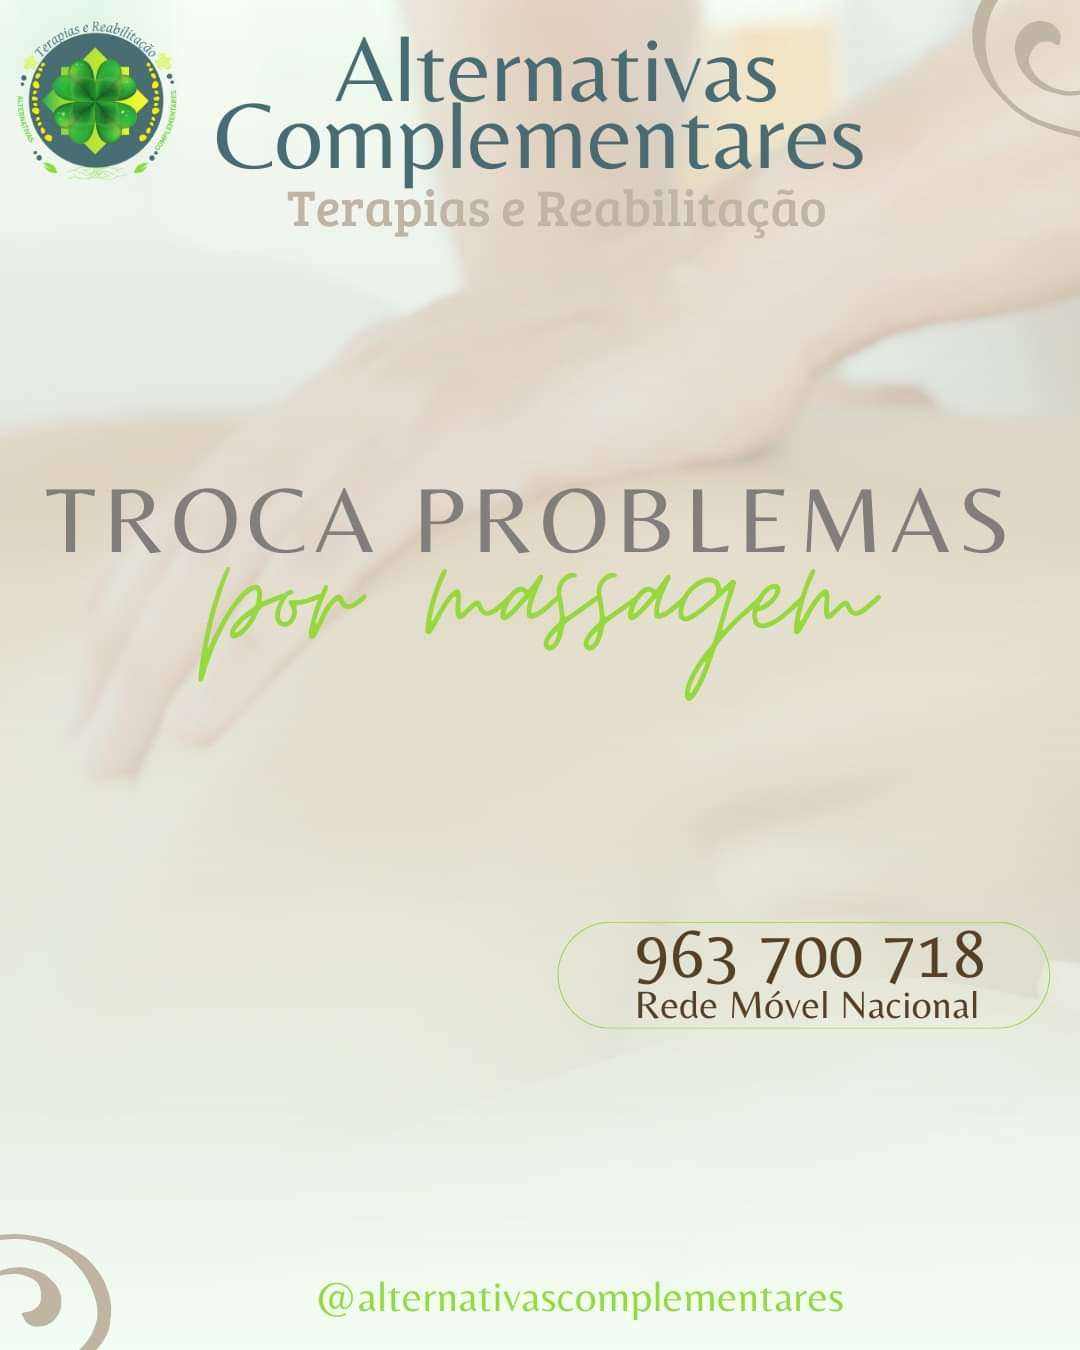 Rita Cordeiro - Terapias Alternativas Complementares: bem-estar e reabilitação - Vila Franca de Xira - Medicinas Alternativas e Hipnoterapia